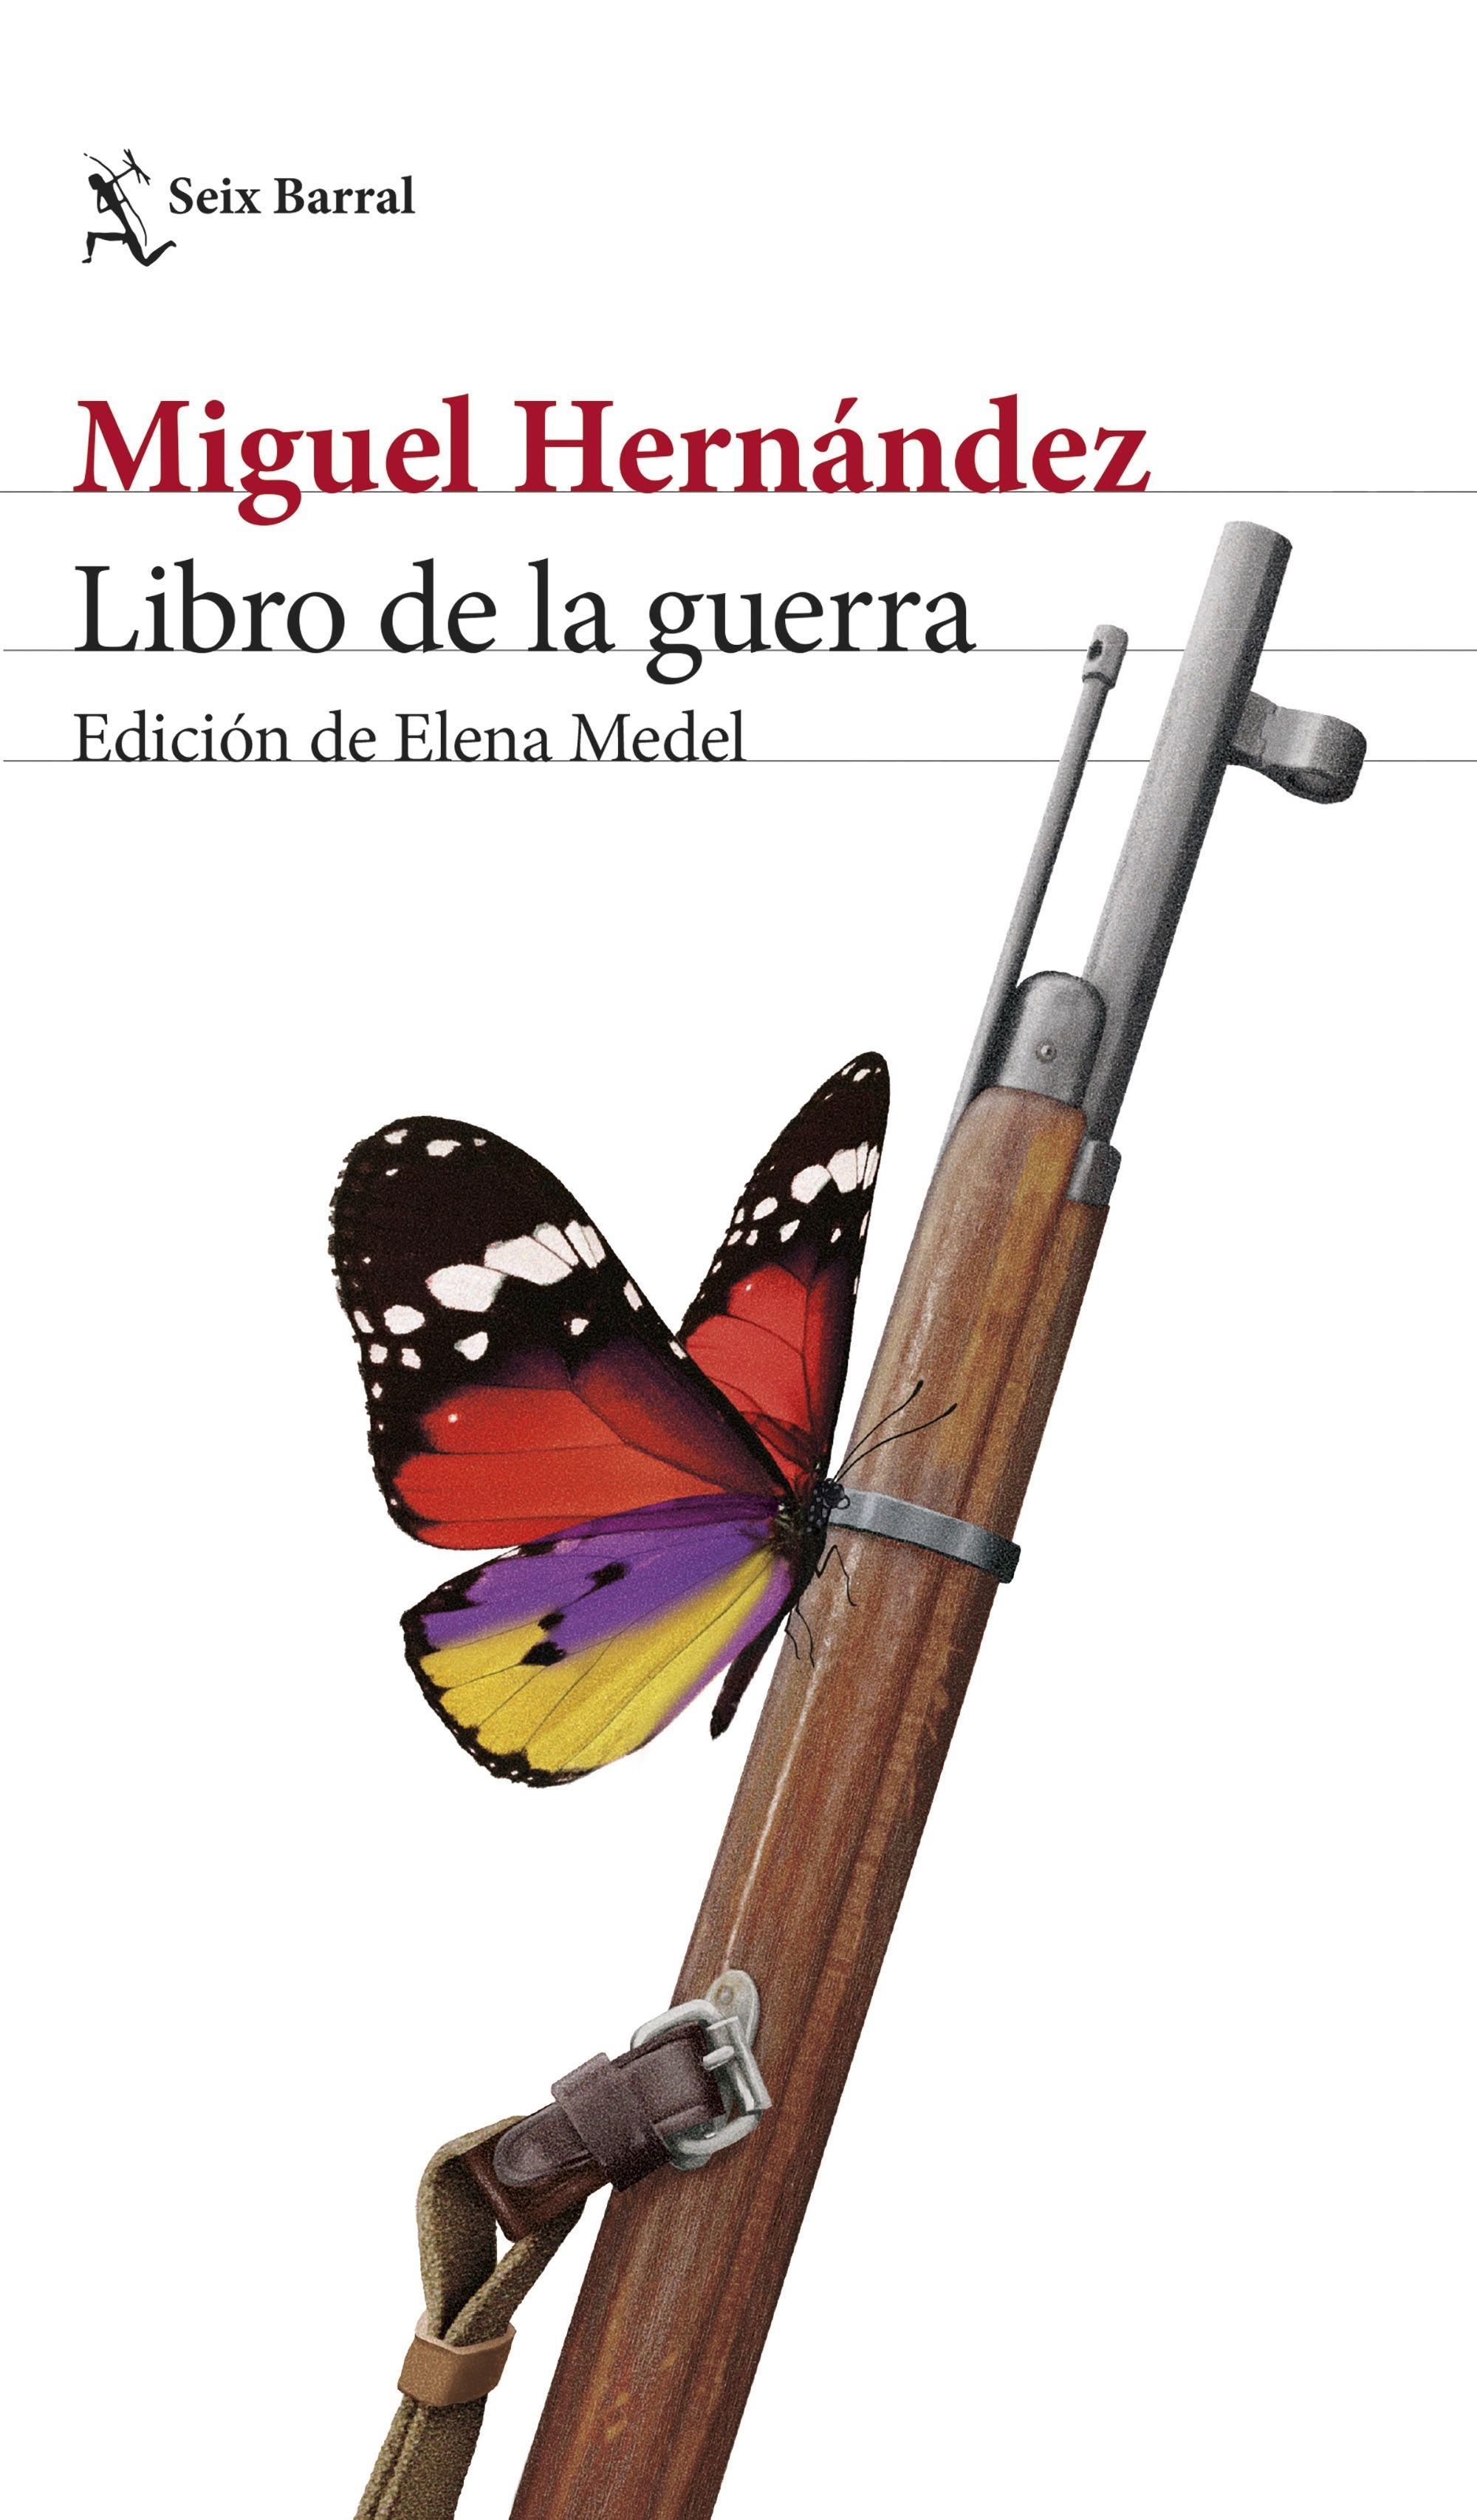 Libro de la Guerra "Edición de Elena Medel"